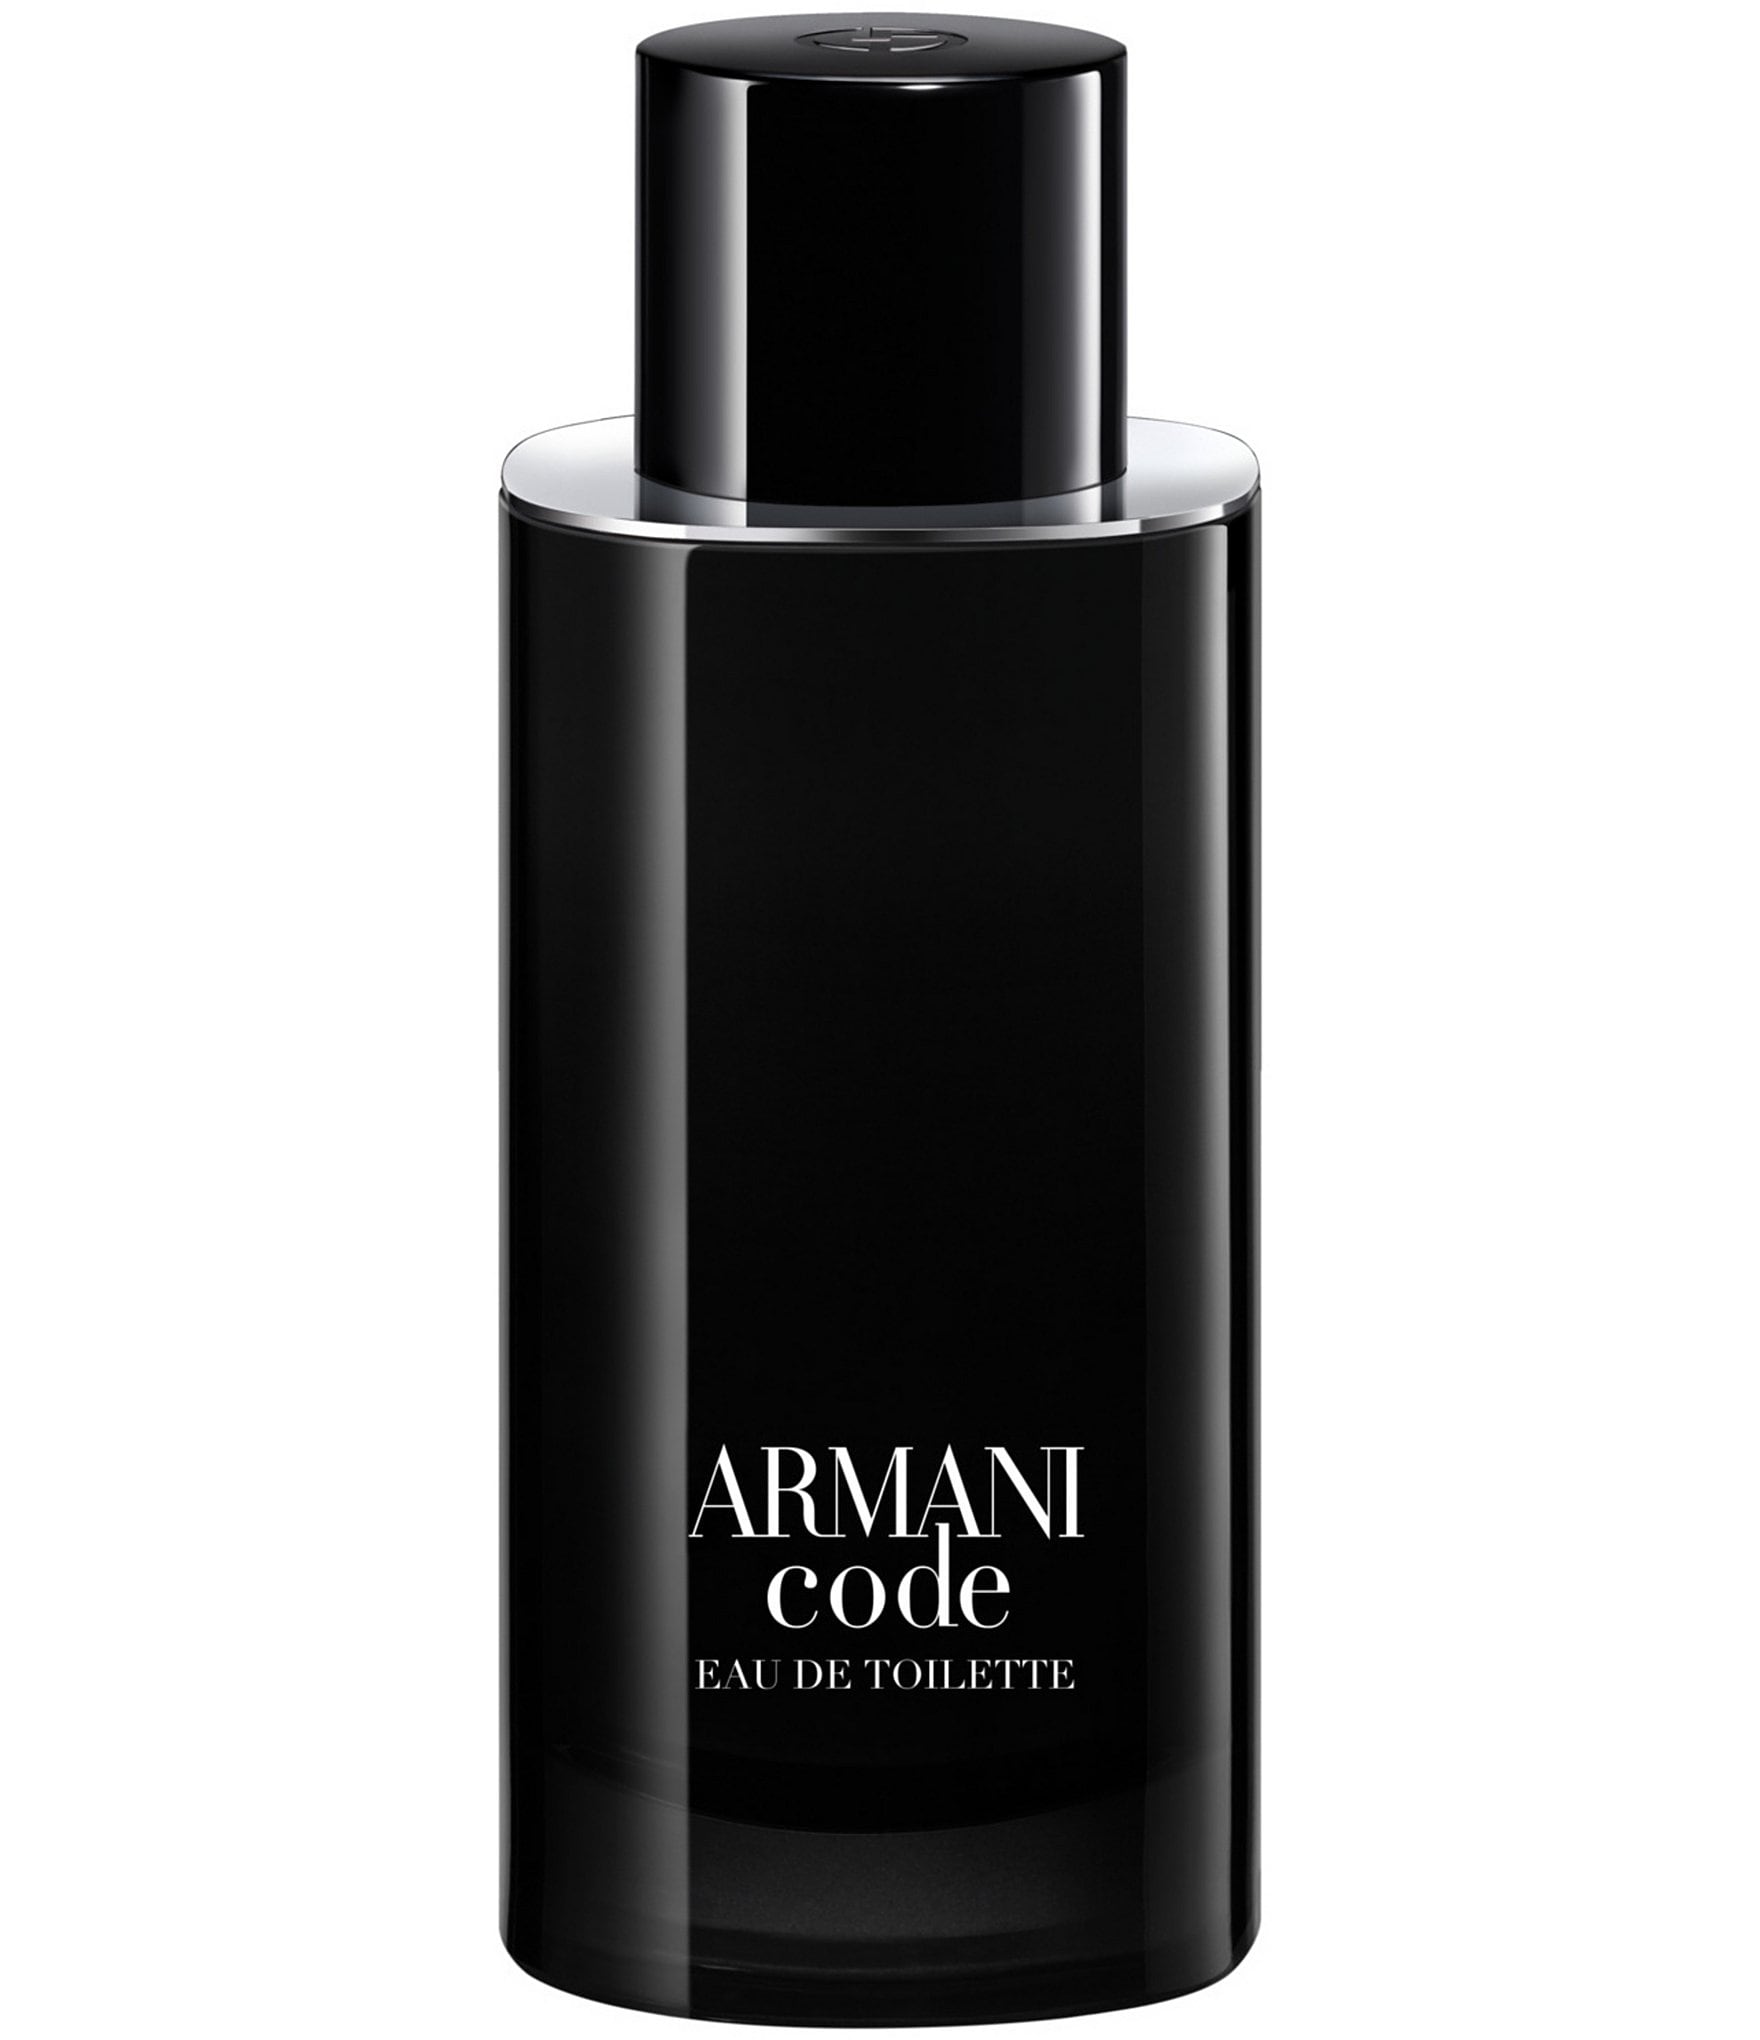 Giorgio Armani Men's Cologne & Fragrance | Dillard's